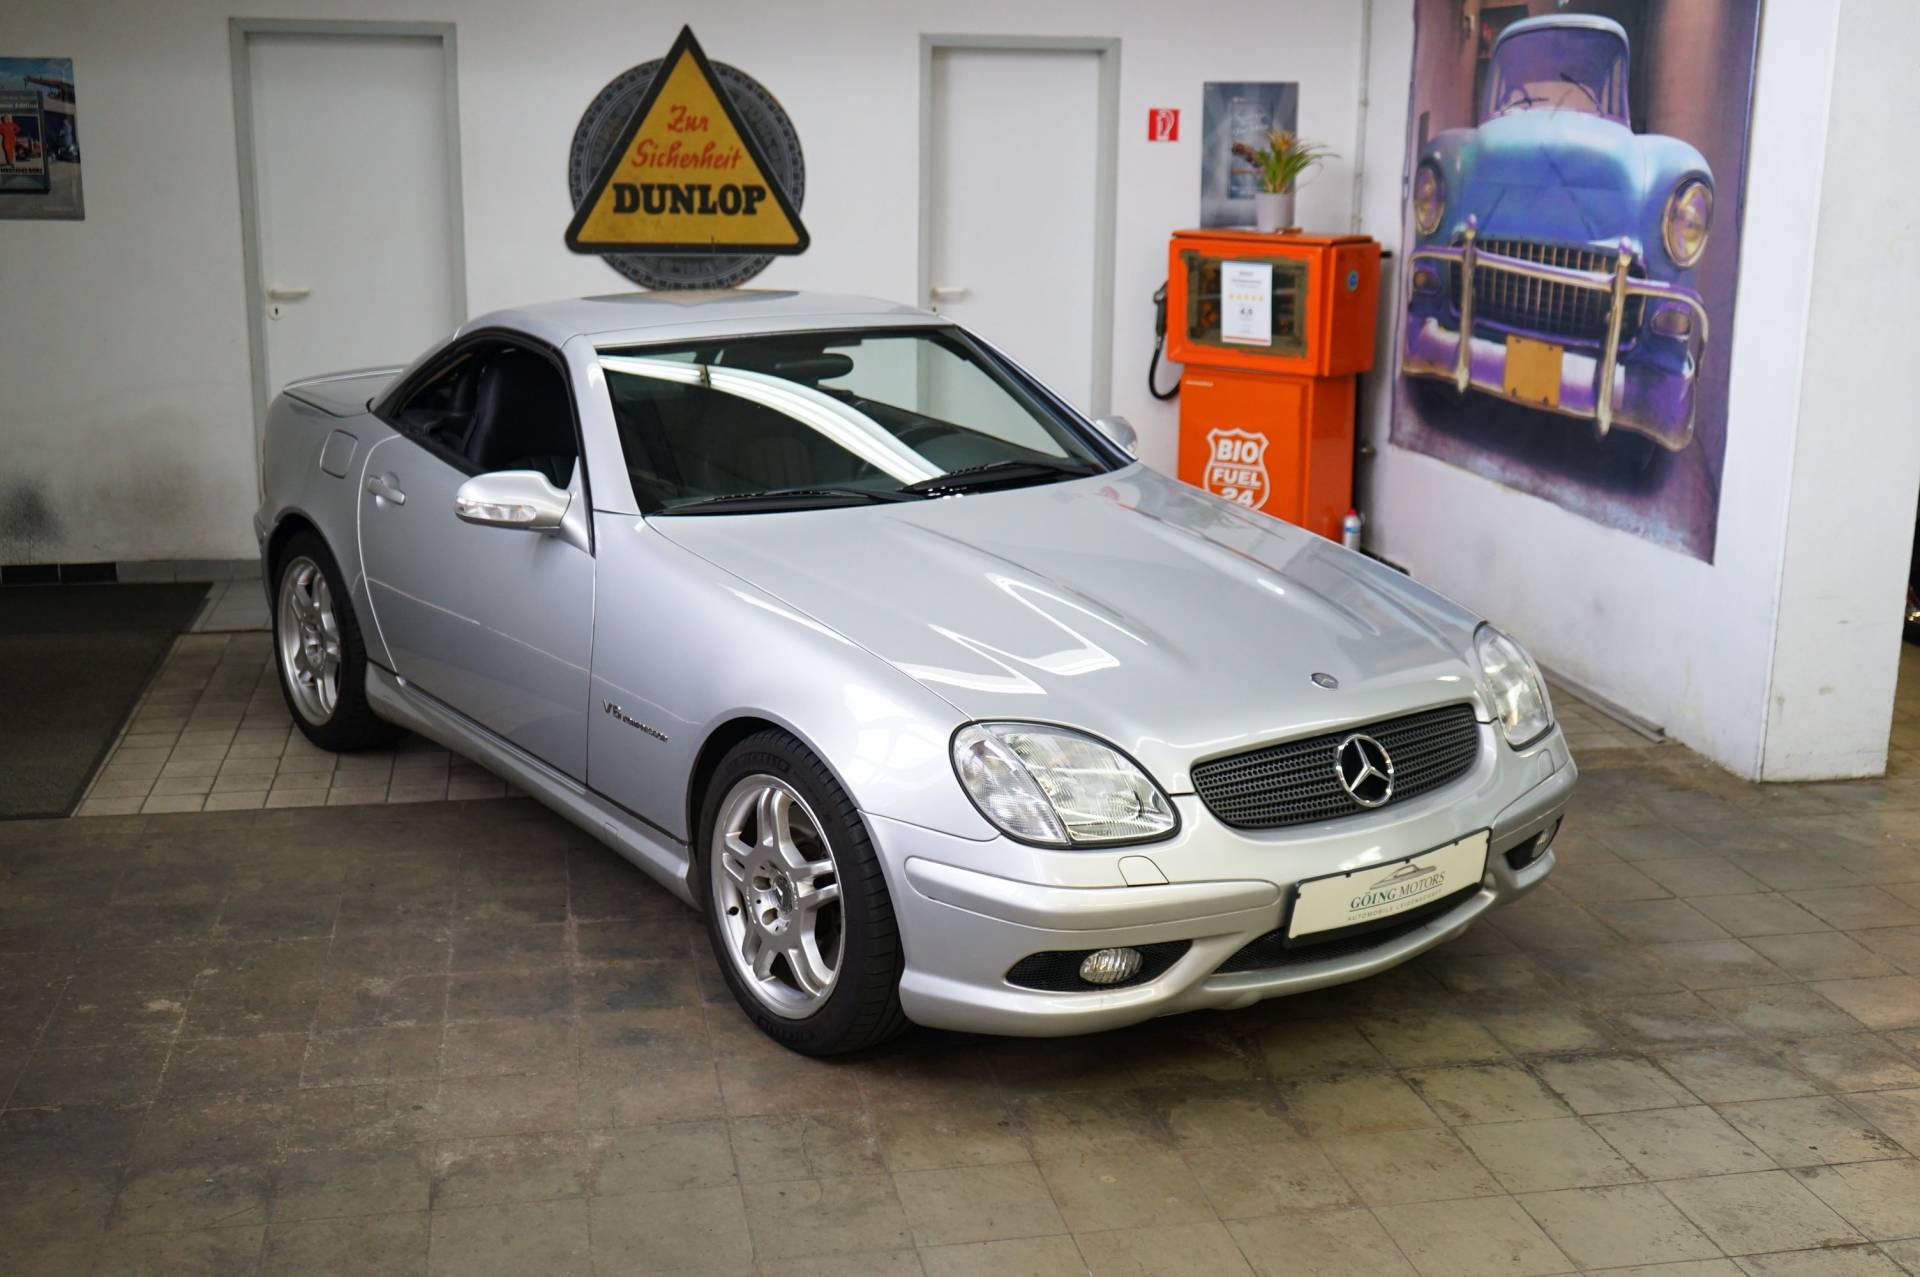 For Sale: Mercedes-Benz SLK 32 AMG (2002) offered for €28,800